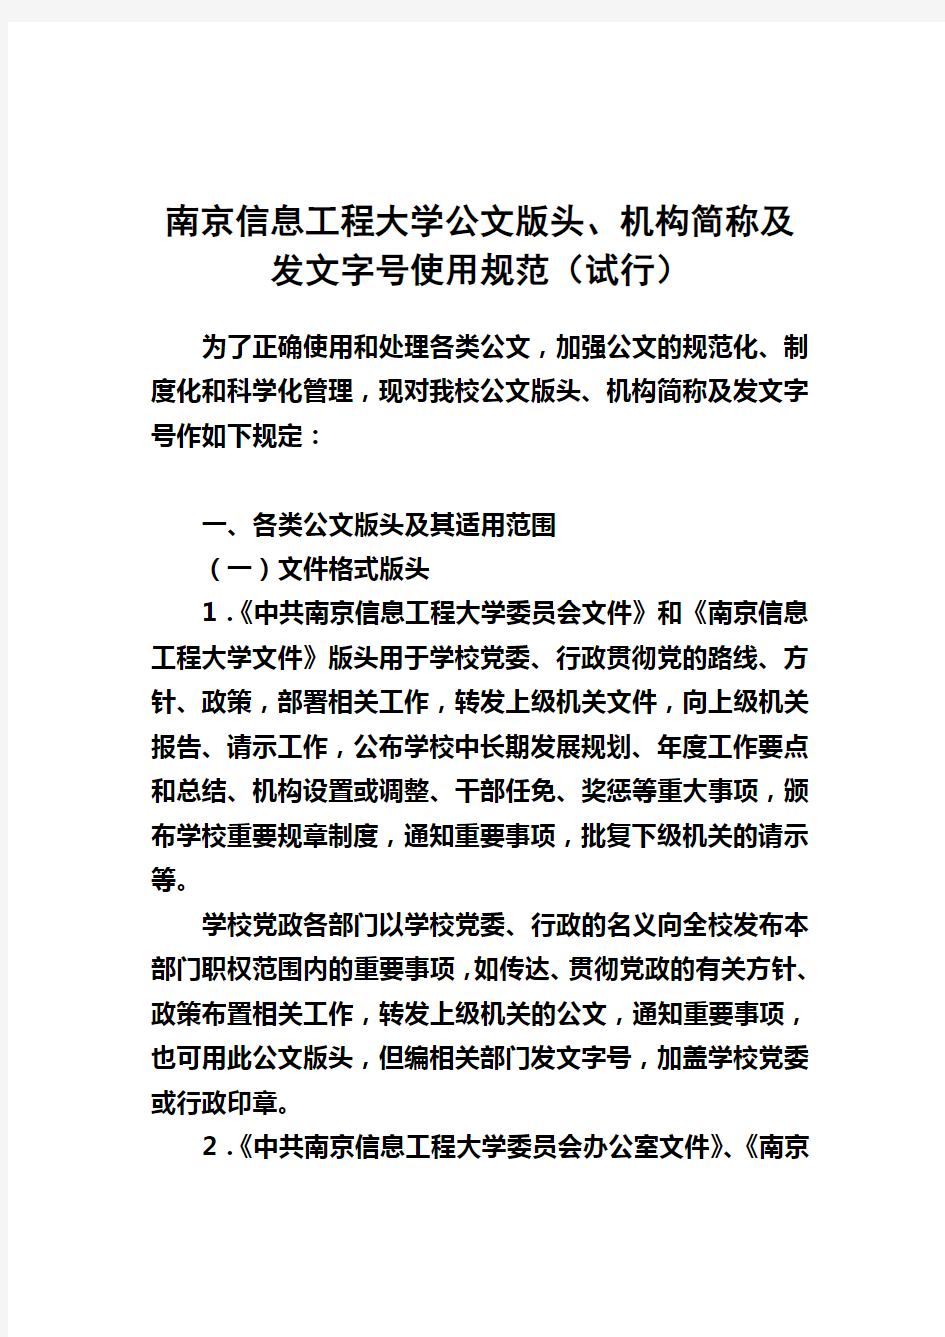 南京信息工程大学公文版头、机构简称及发文字号使用规范(试行)